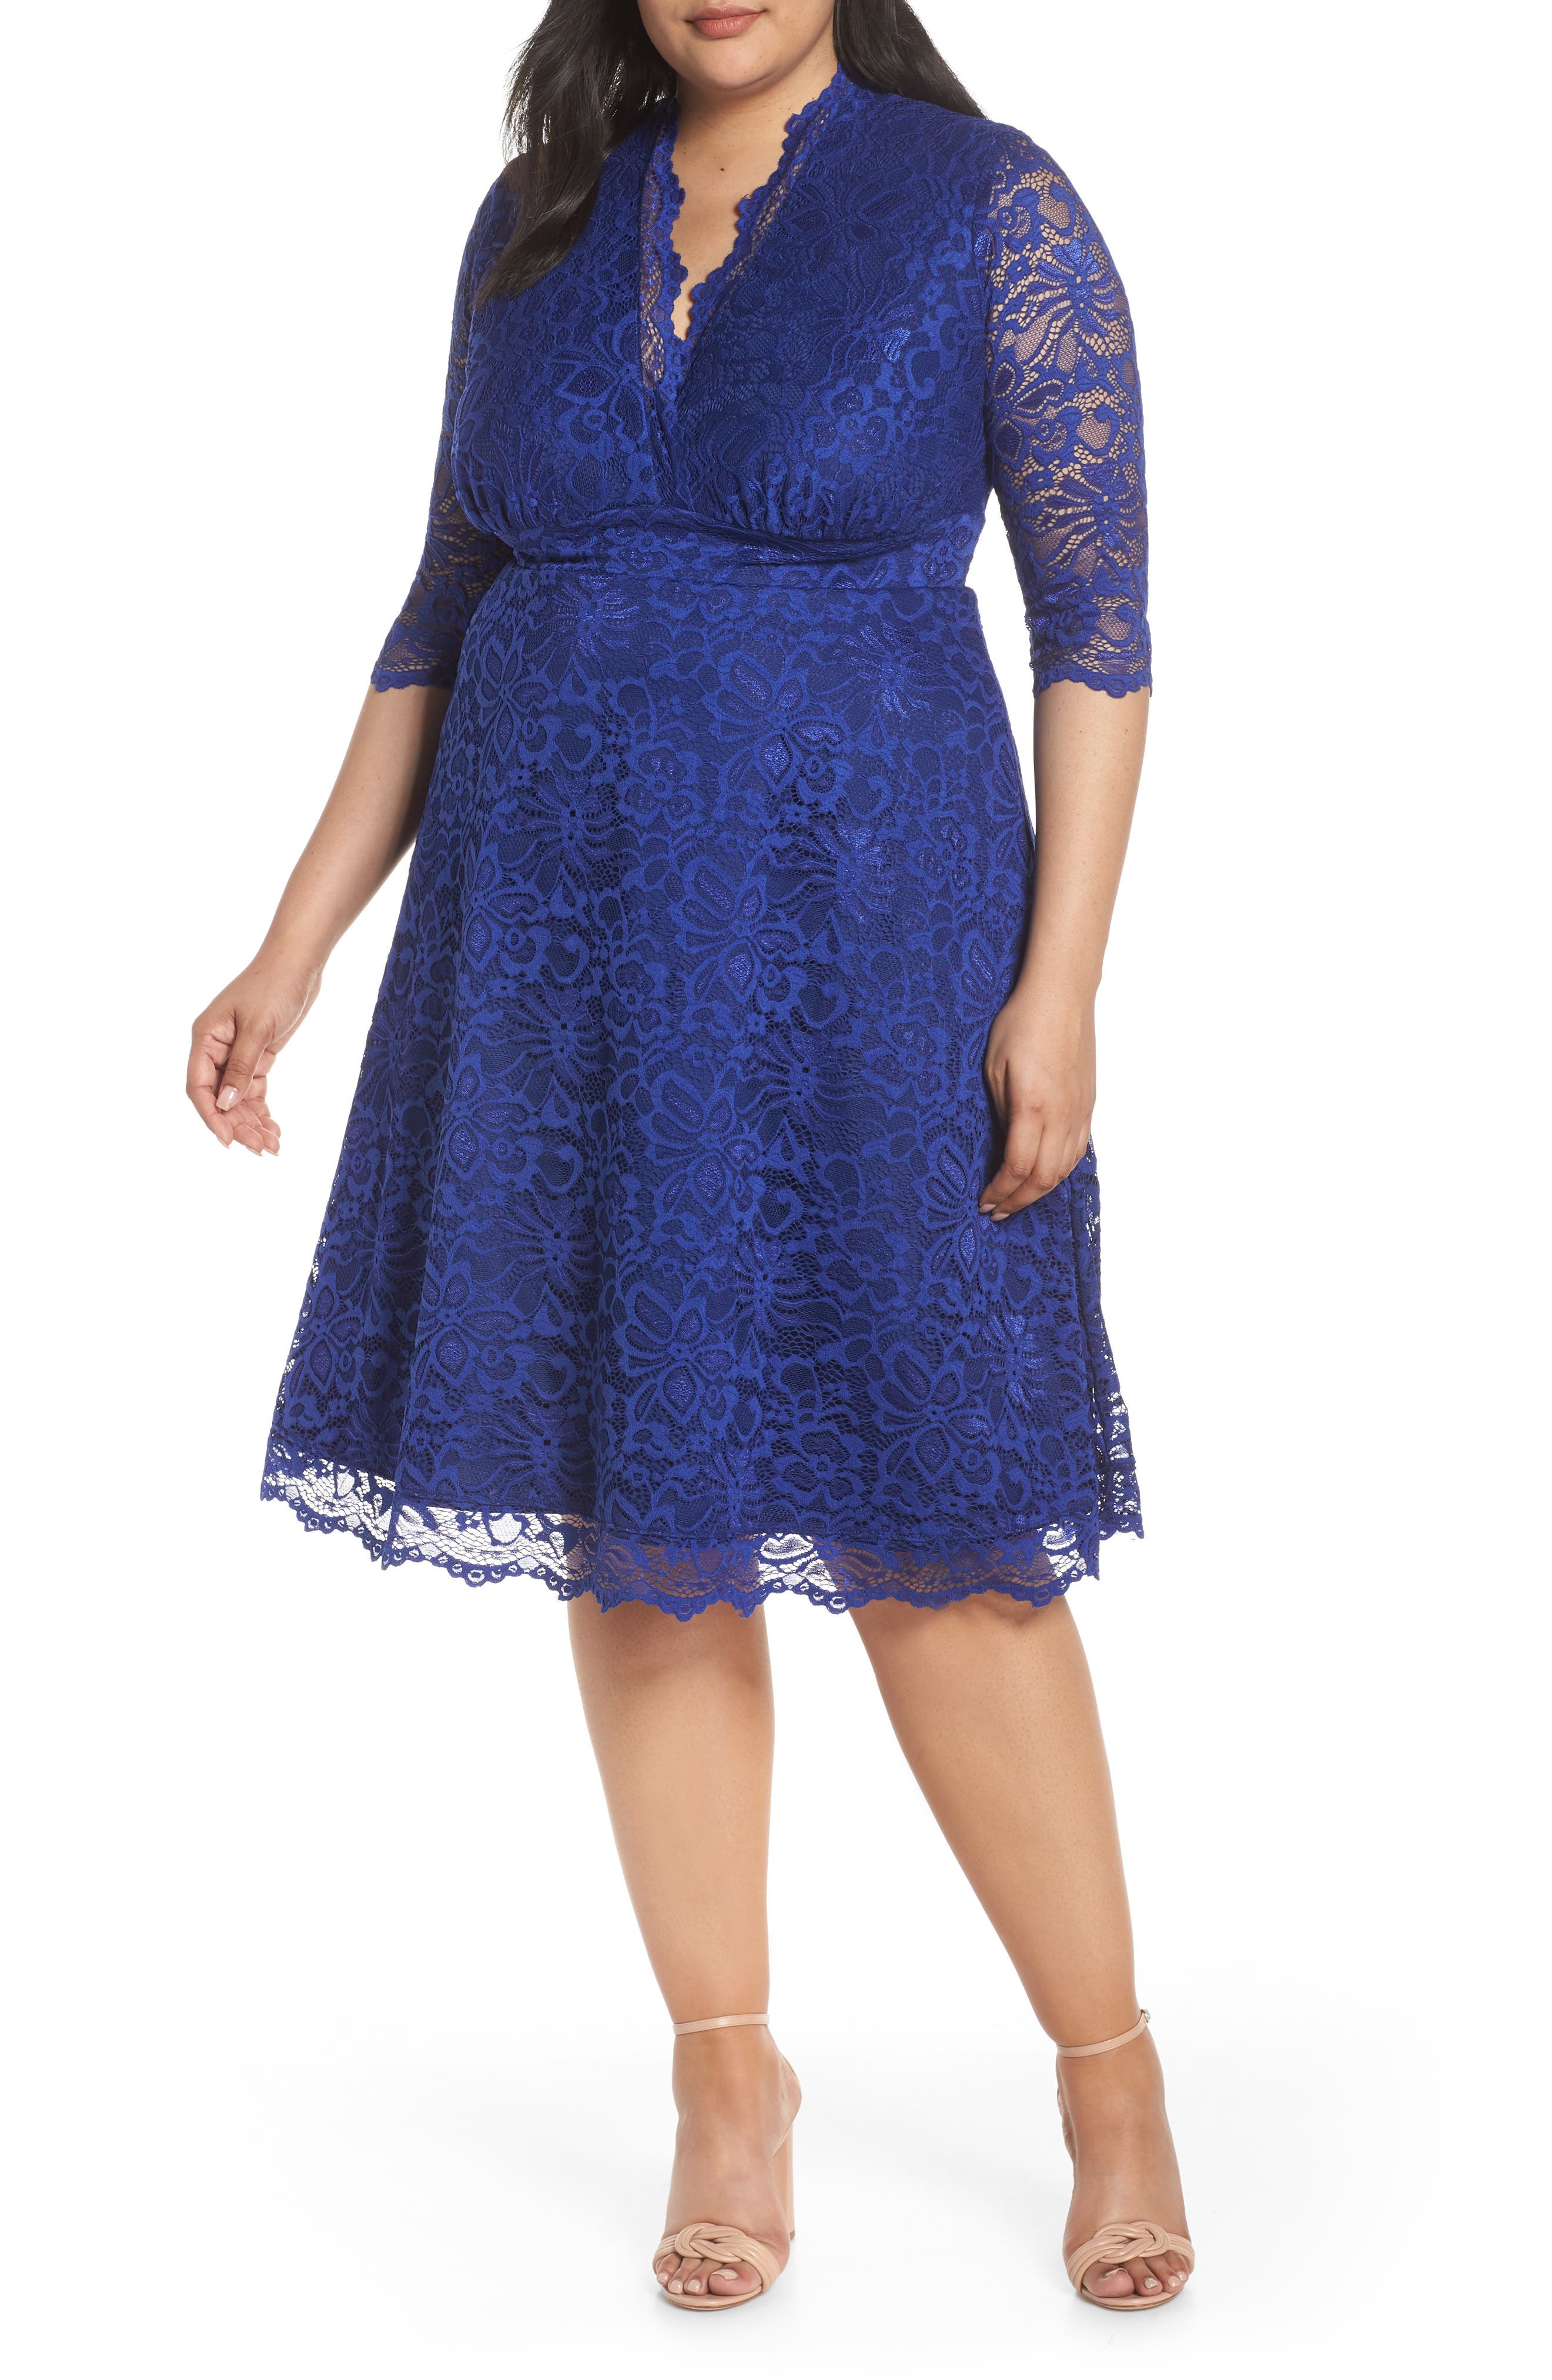 Blue Plus Size Dresses for Women ...